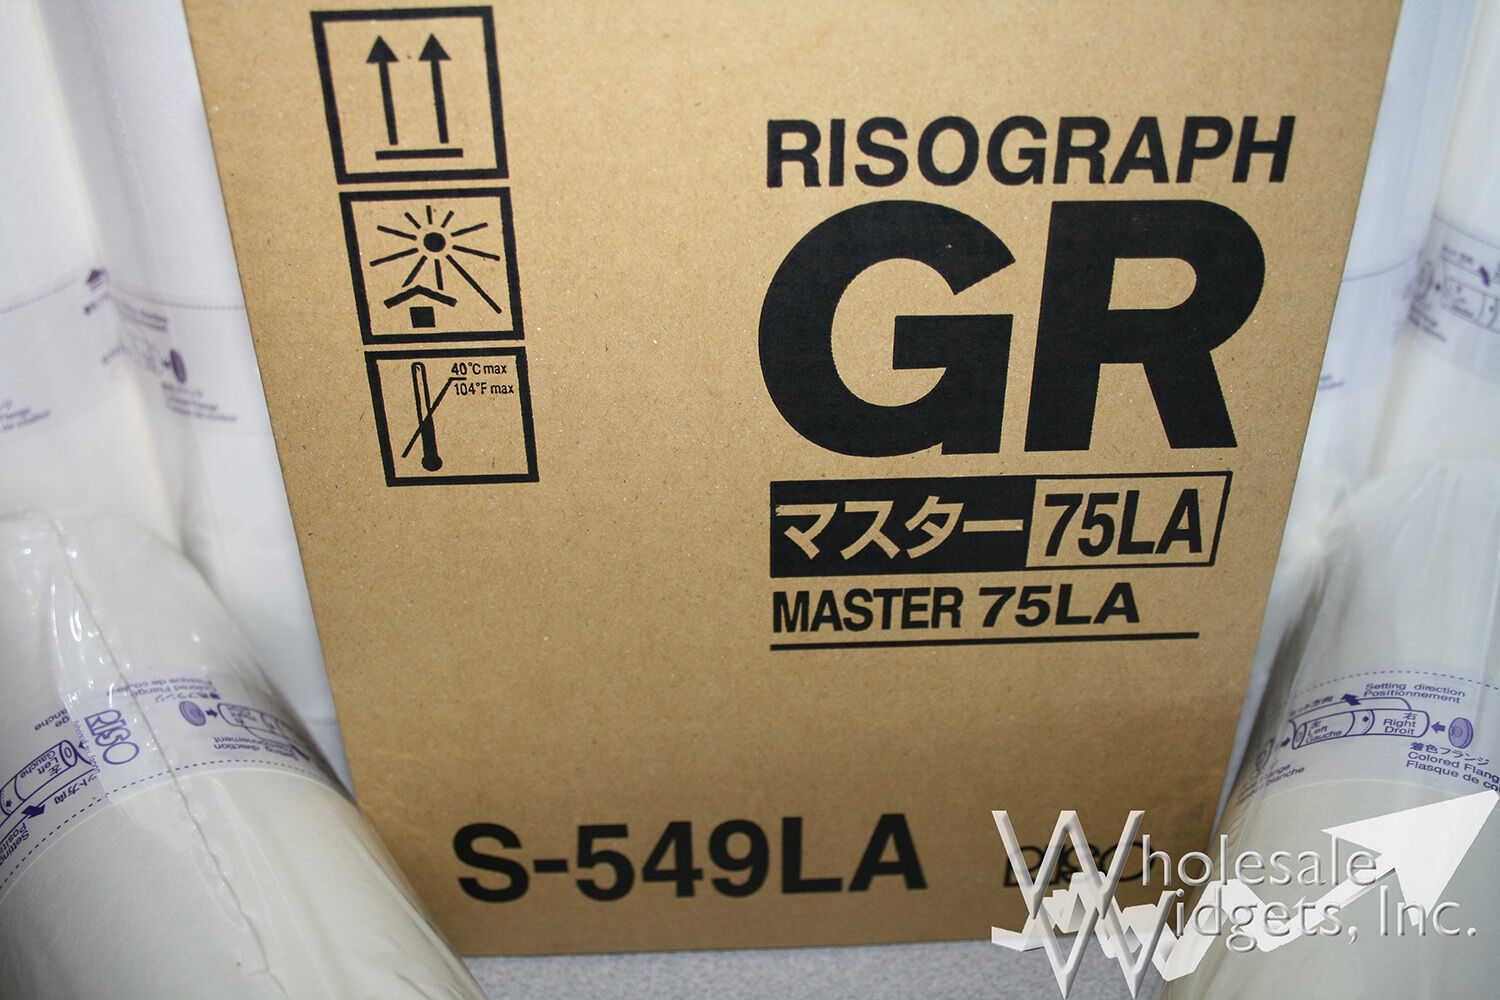 2 Genuine Riso S-549LA Masters.  Fits Risograph GR 1700, 1750, 2700, 2710, 2750